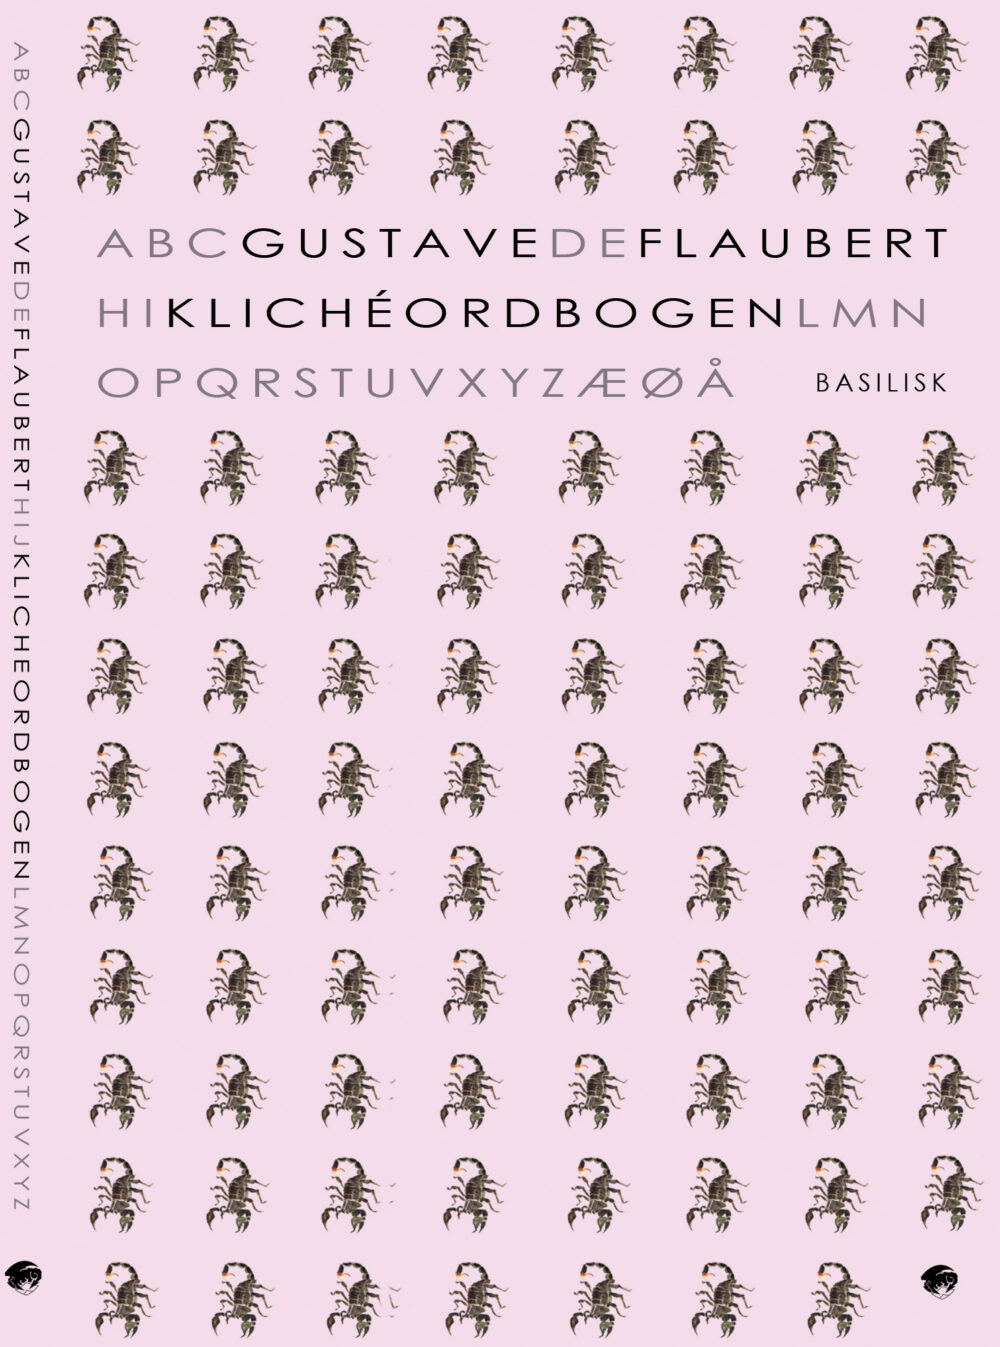 COVER - Flaubert